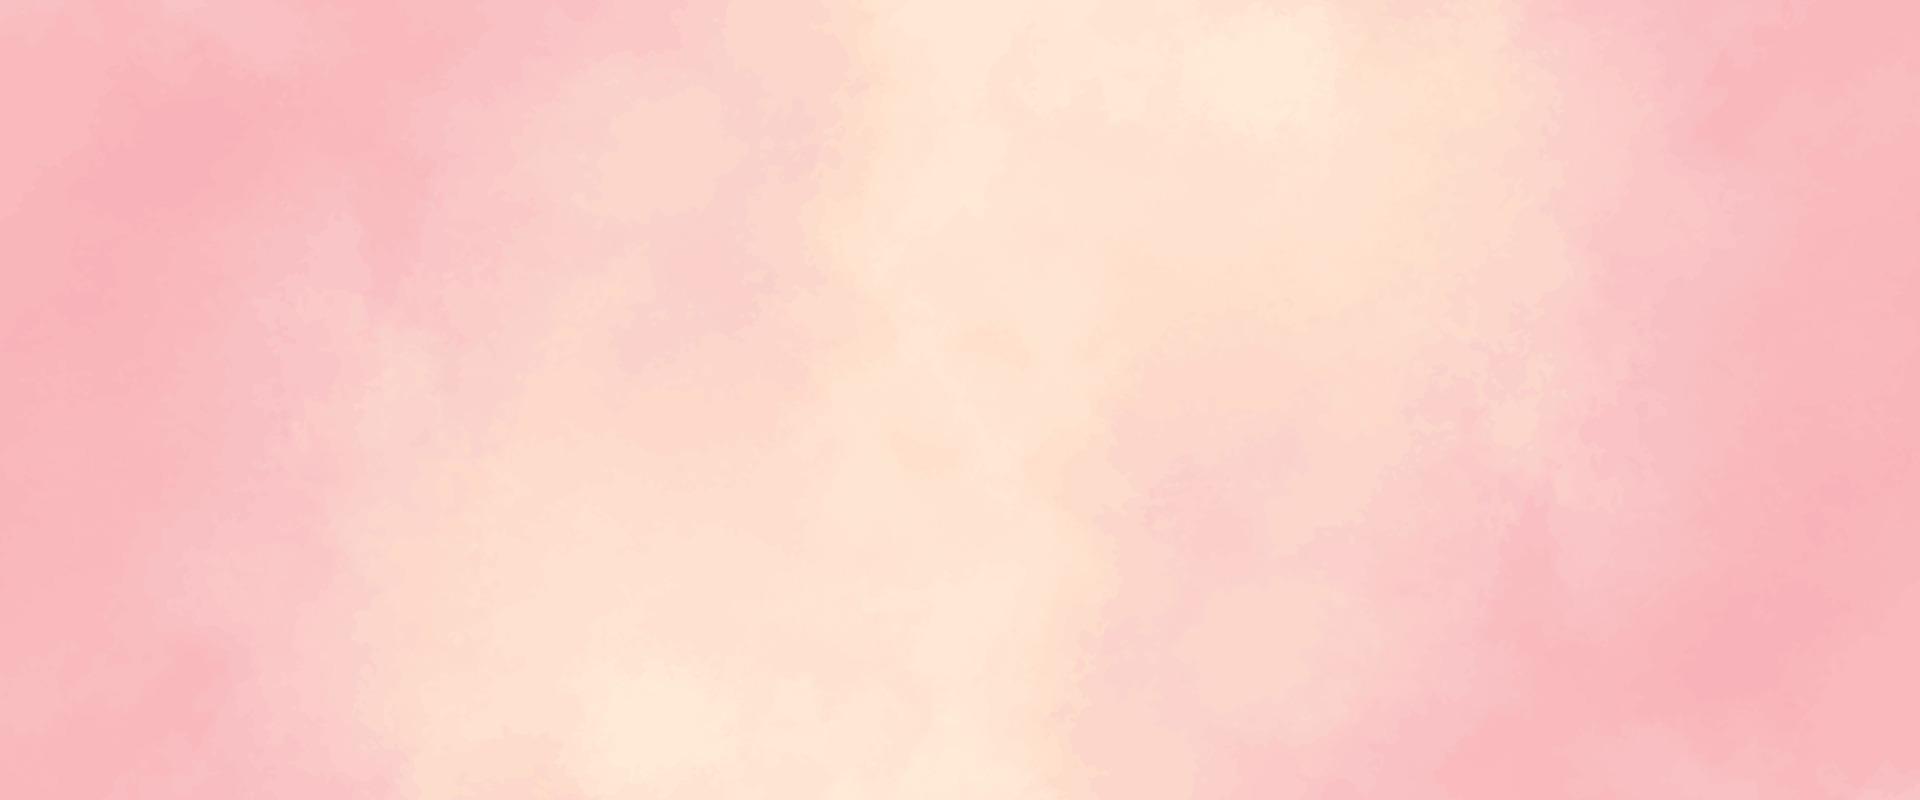 pedra interior de fundo de textura de mármore rosa. fundo de cor coral. aquarela abstrata. copie o espaço. fundo pastel vinho. padrão de tintura de gravata grunge moderno. impressão de mármore feminino. cartão de arte de casamento. vetor